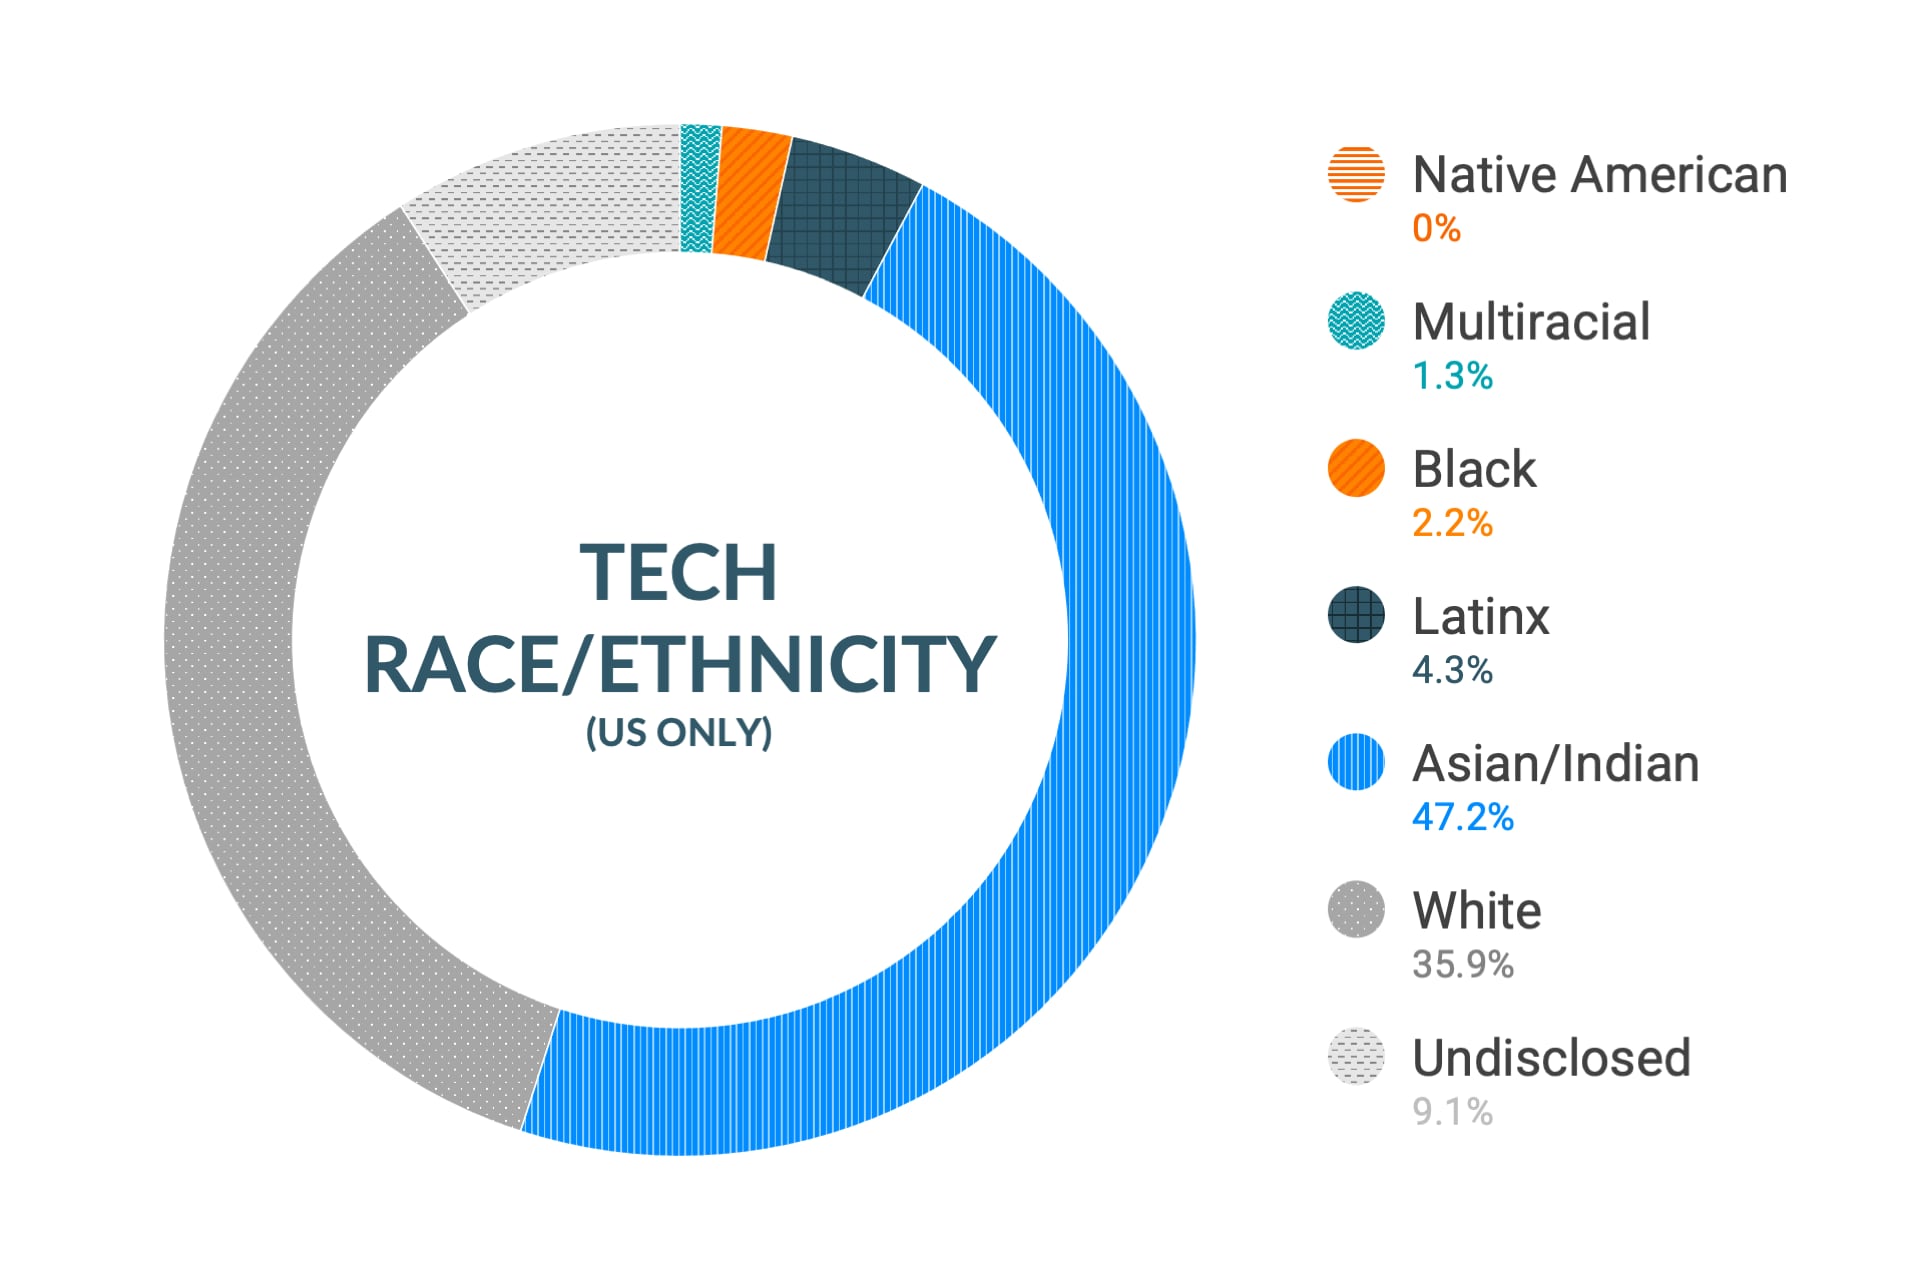 Dati Cloudera su diversità e inclusione etnica nei ruoli tecnici e ingegneristici: nativi americani 0%, multietnici 1,3%, afroamericani 2,2%, latinoamericani 4,3%, asiatici e indiani 47,2%, caucasici 35,9%, non dichiarato 9,1%.